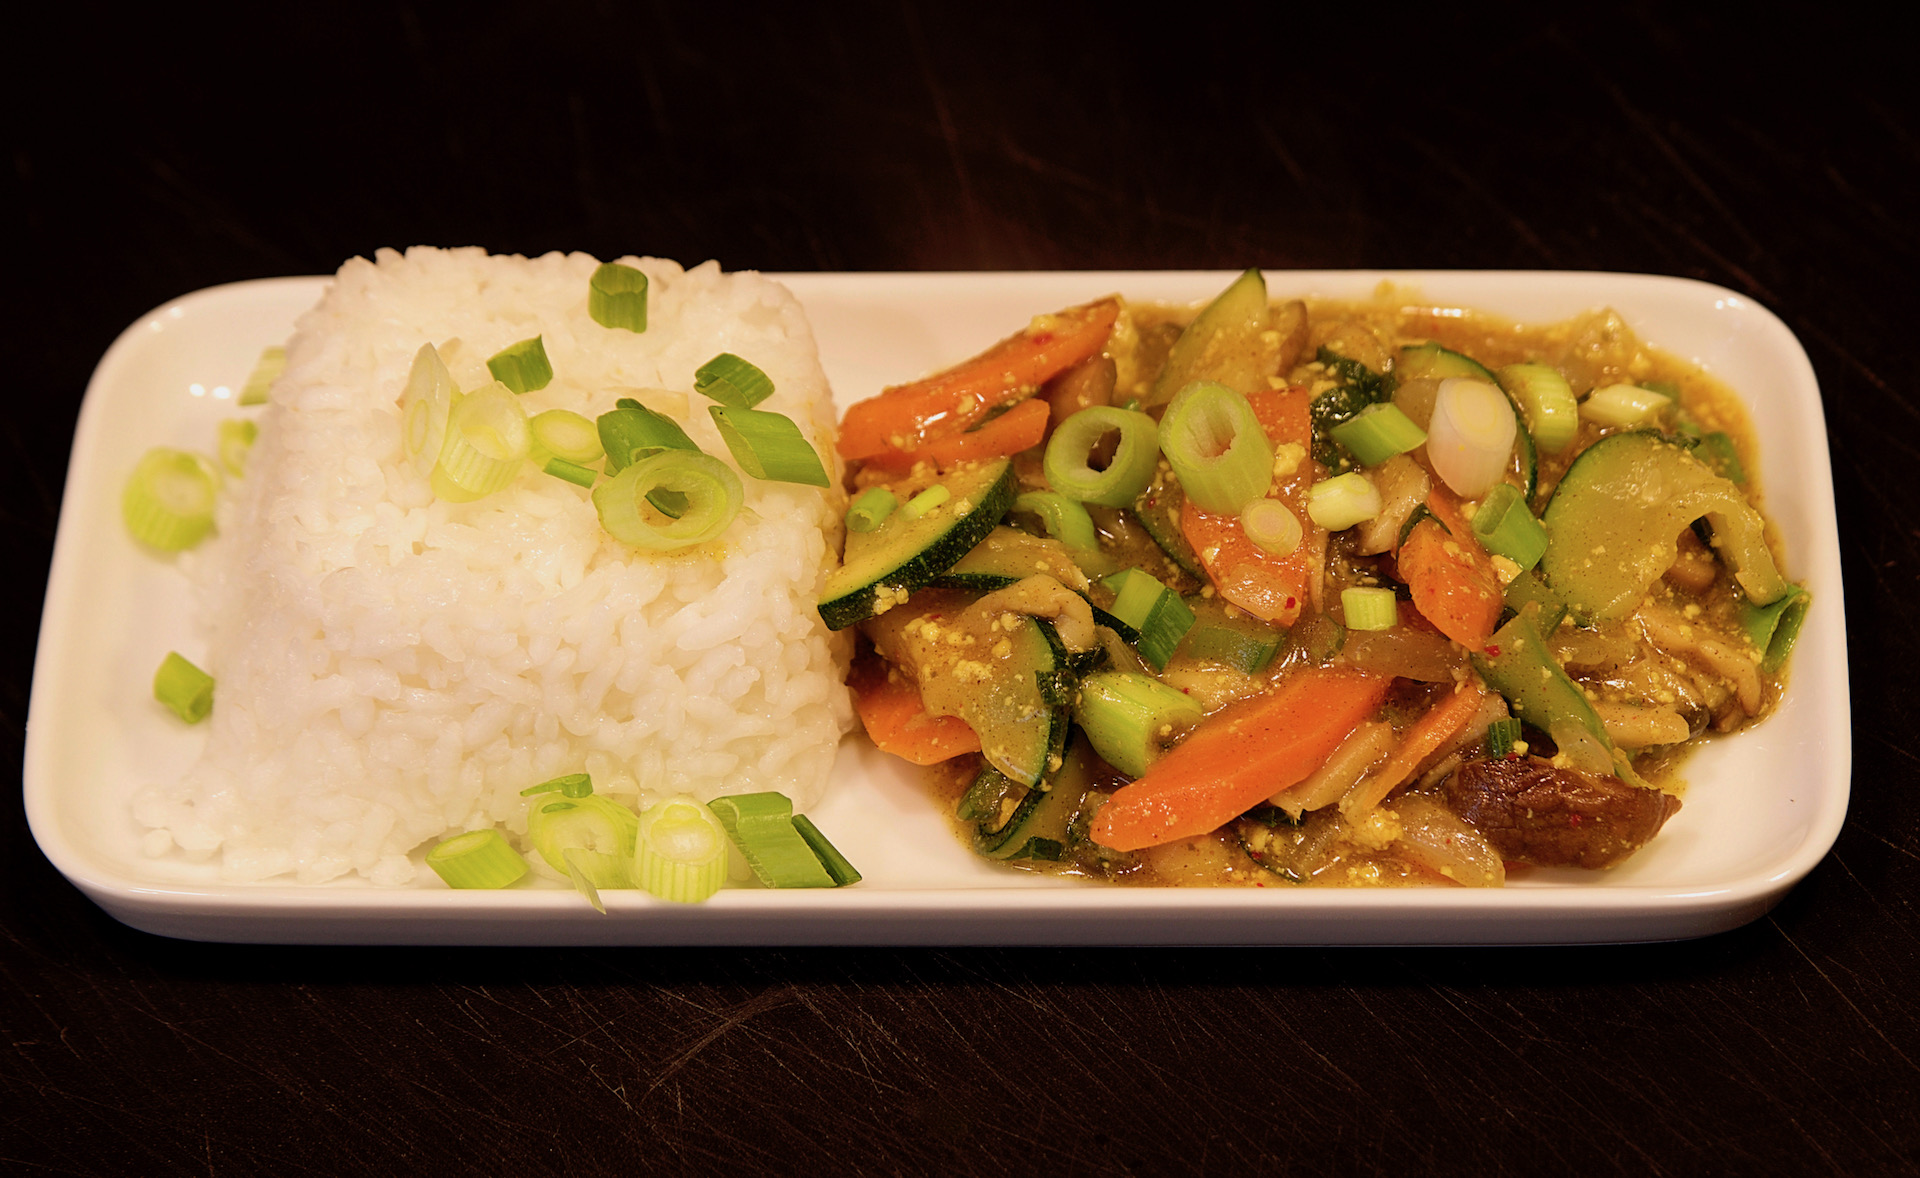 Mango-Curry-Tofu mit Currygemüse und Reis - Bild © G. Ewert